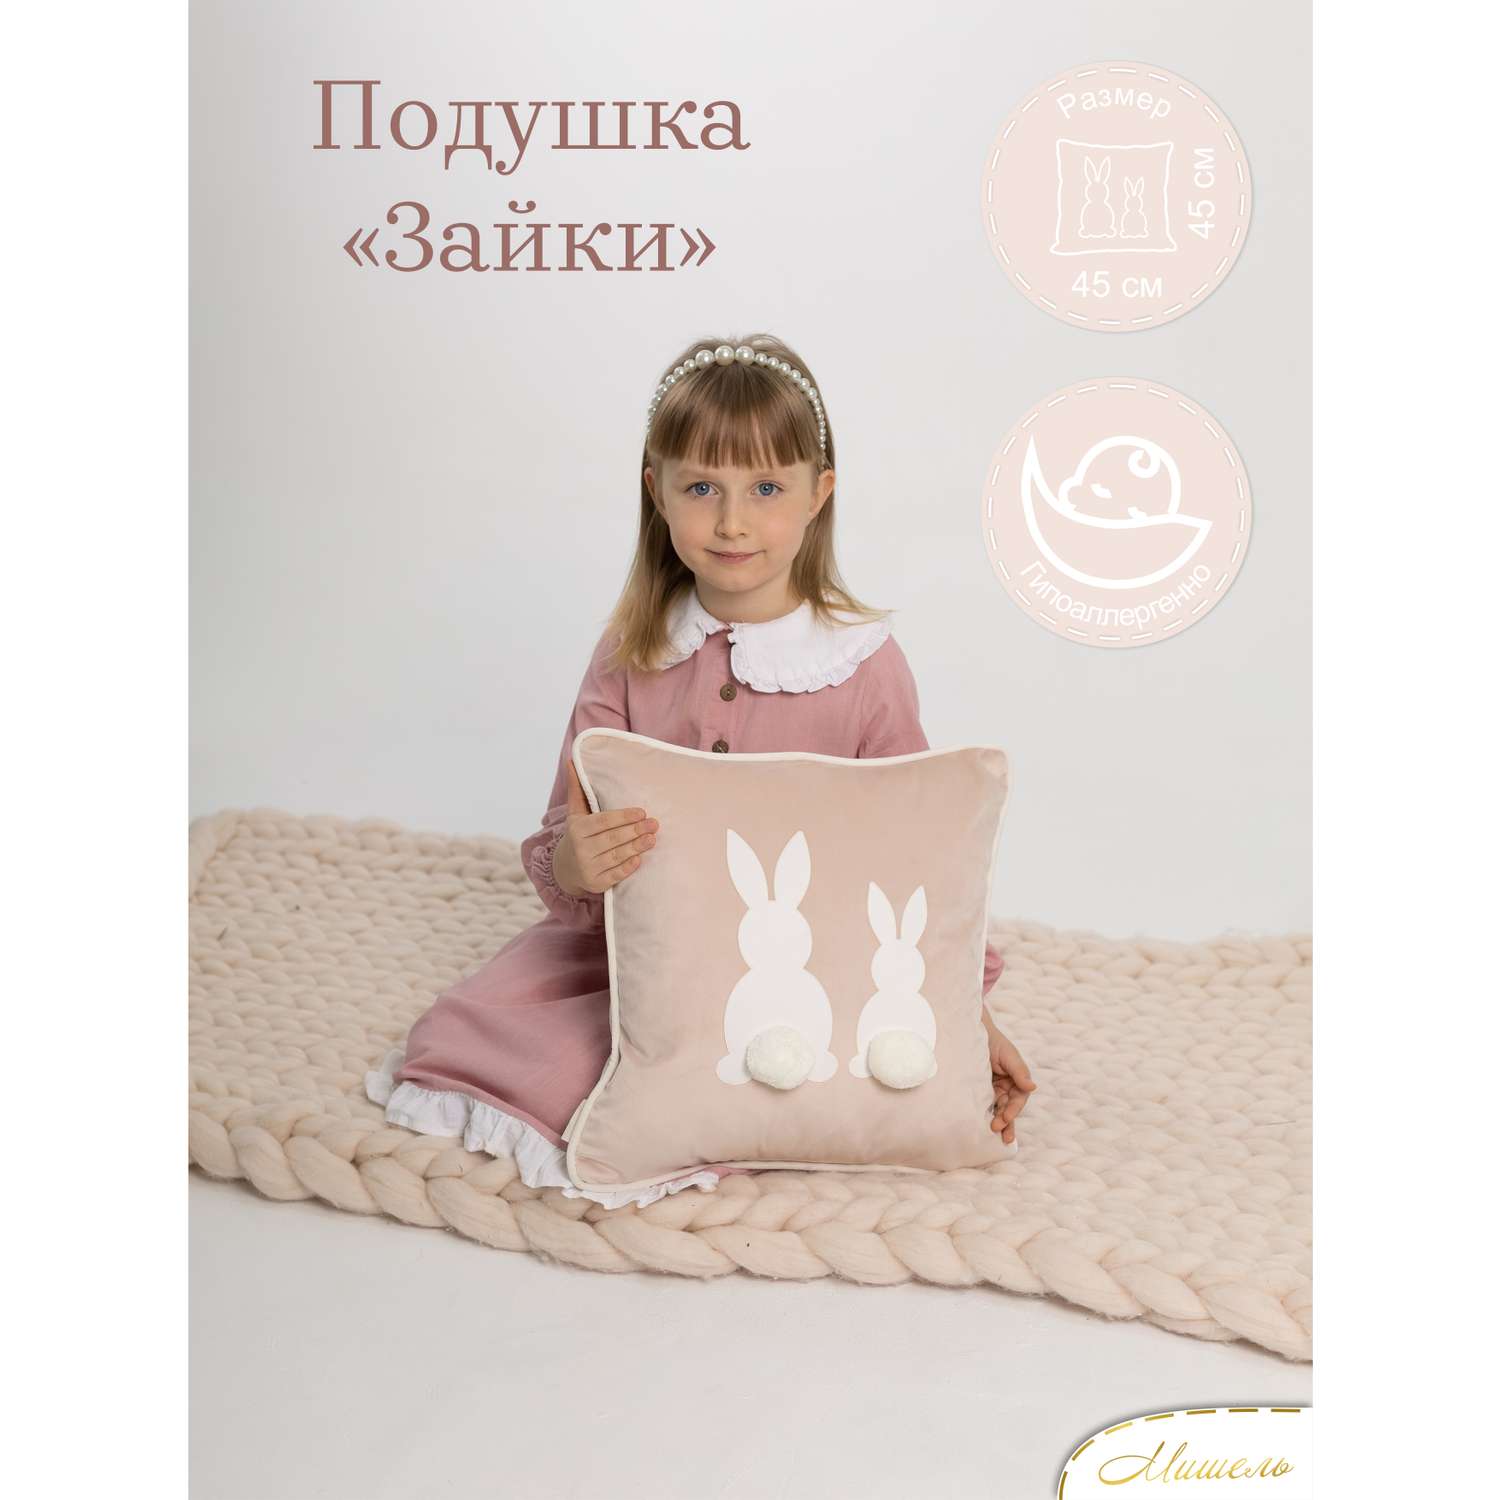 Подушка декоративная детская Мишель Зайки цвет розовая пудра - фото 1